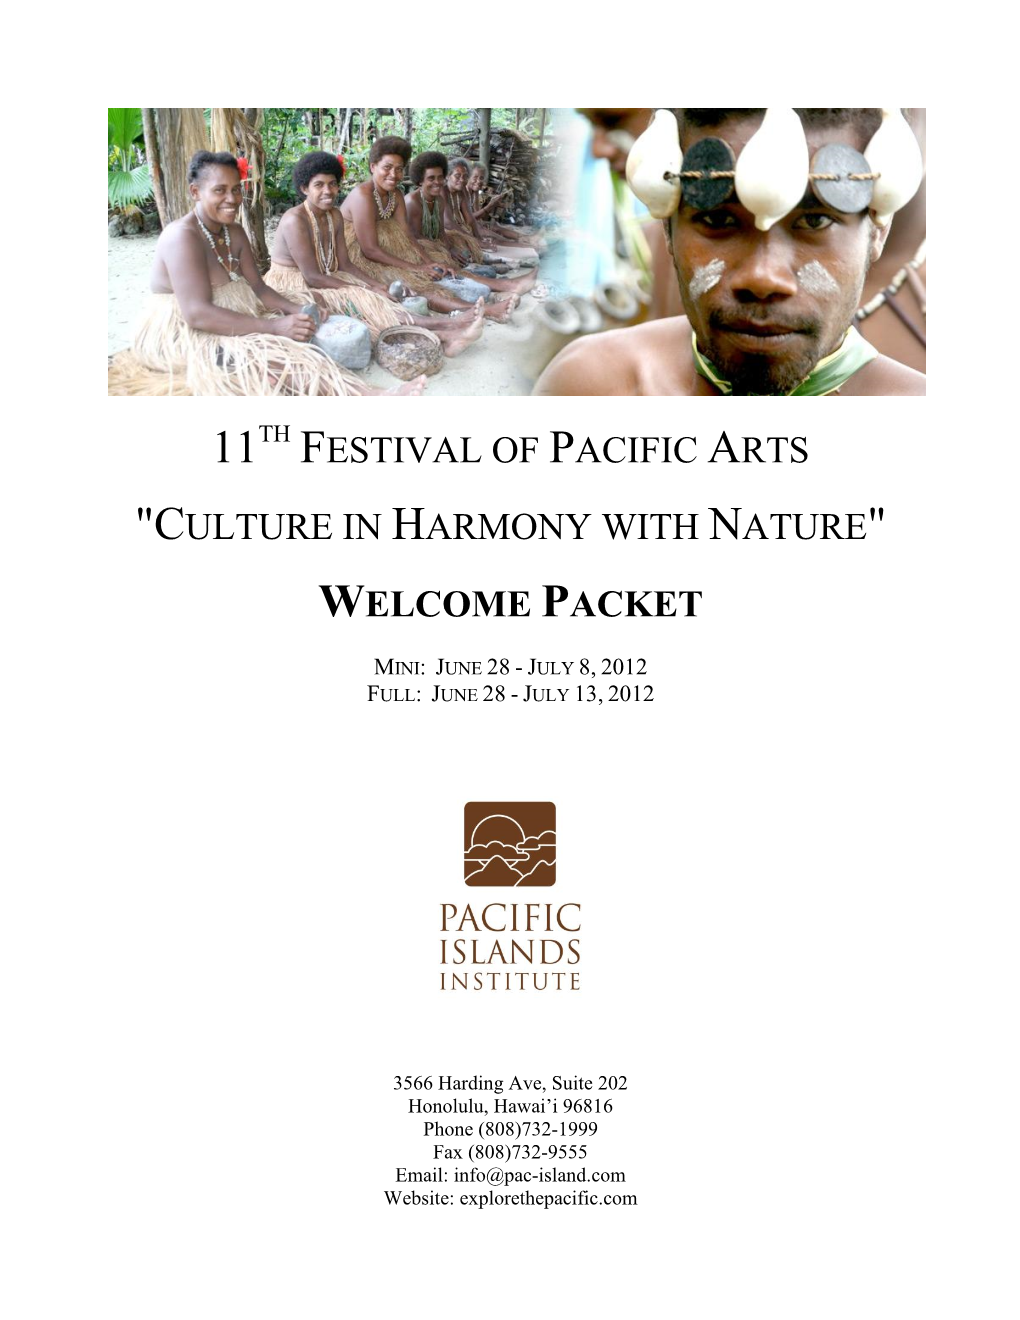 Solomon Islands for the 11Th Festival of Pacific Arts